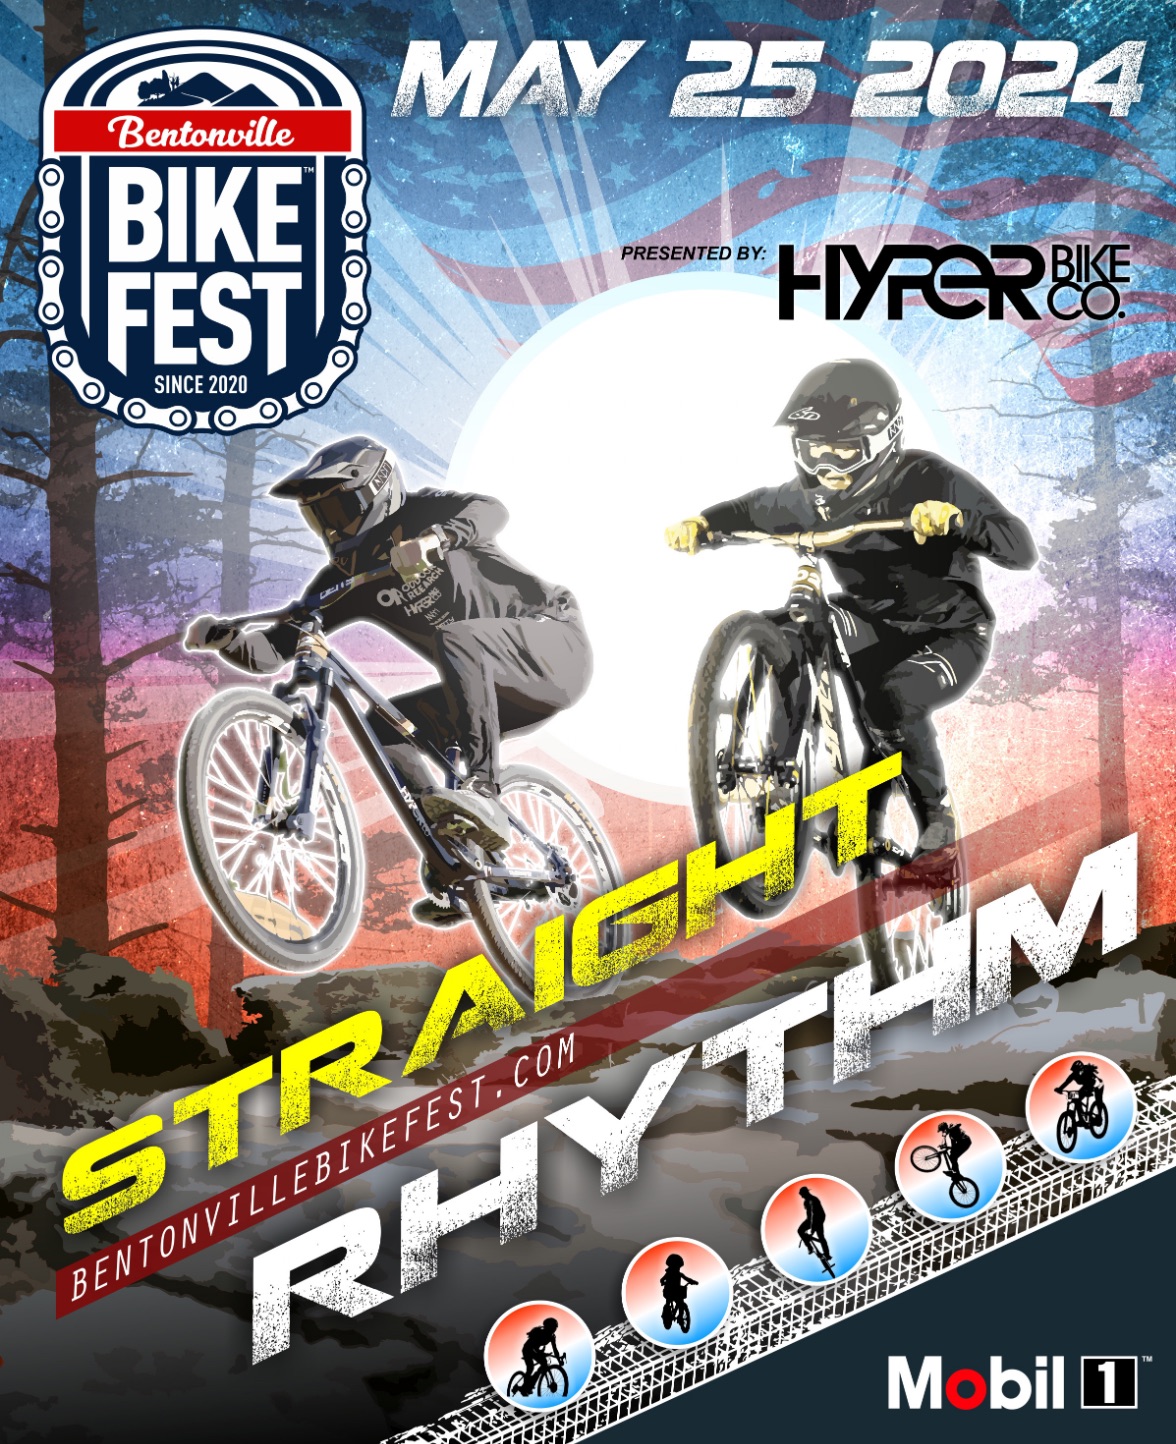 Straight Rhythm presented by Hyper Bike Co.